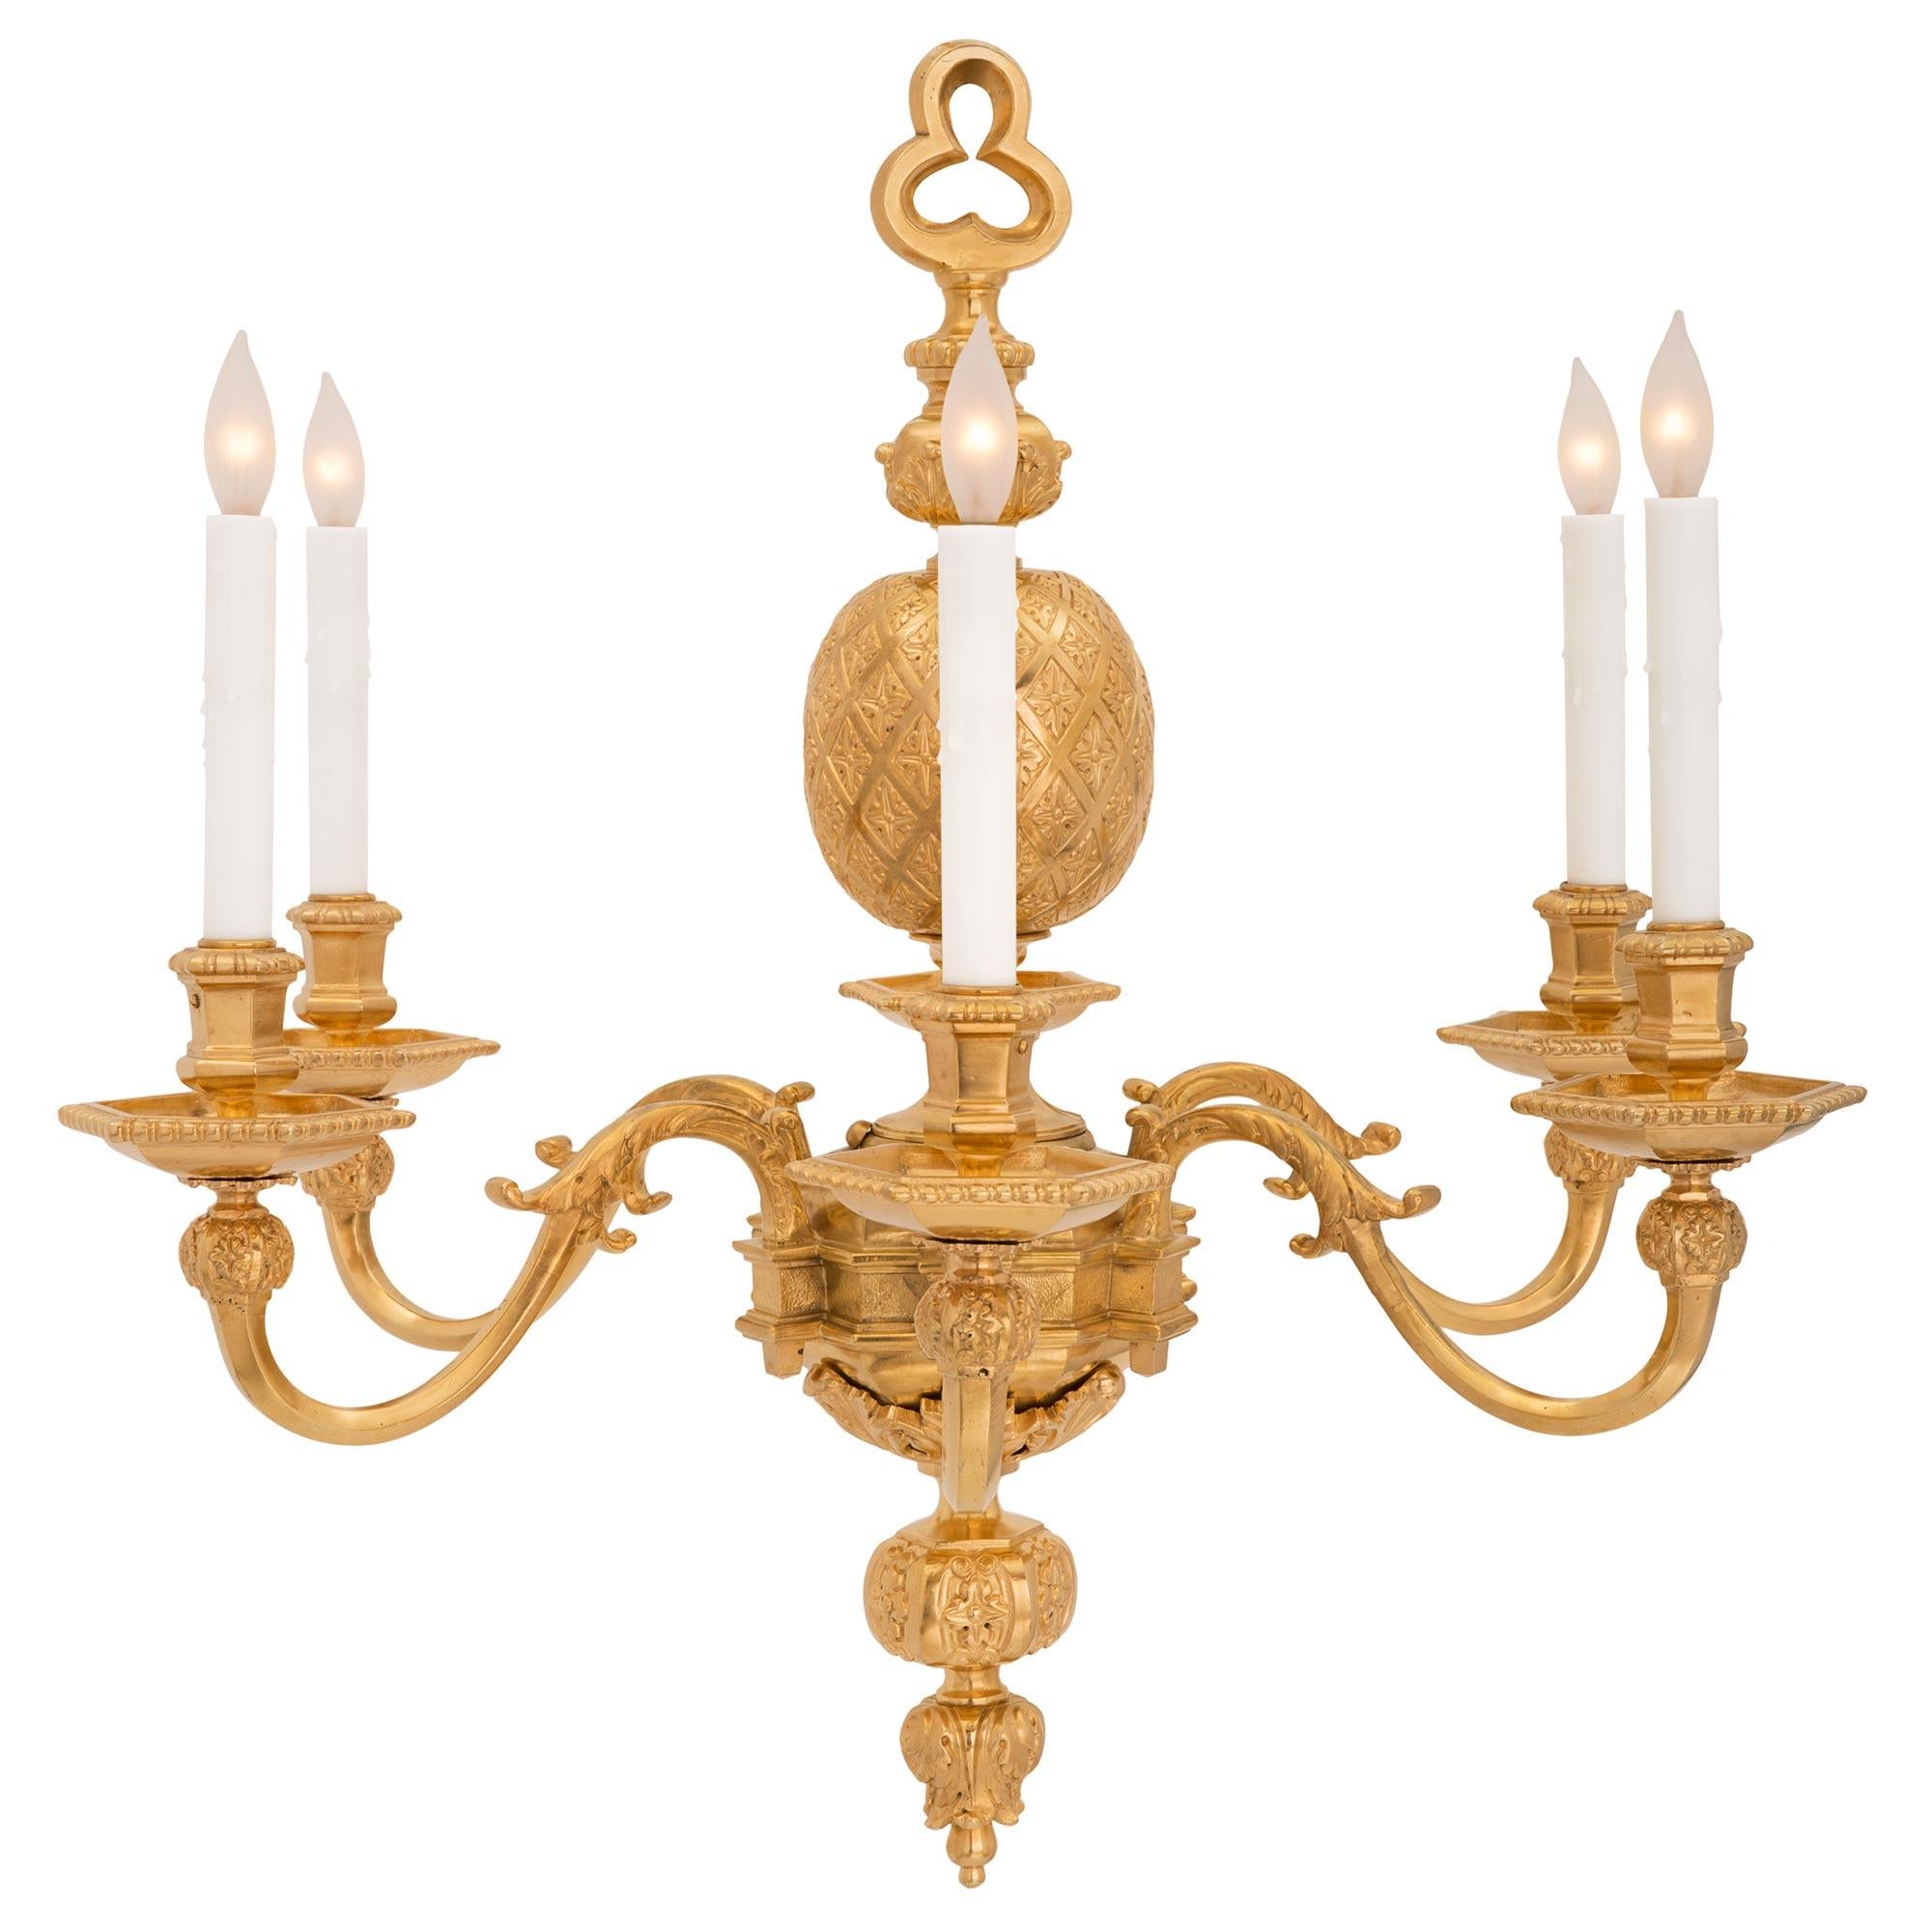 Un lustre en bronze doré de style Louis XIV du 19ème siècle, signé Viane. Le lustre à six bras est centré par un magnifique épi floral richement ciselé qui mène à des feuilles d'acanthe entourant le corps. Les six bras carrés aux élégantes volutes